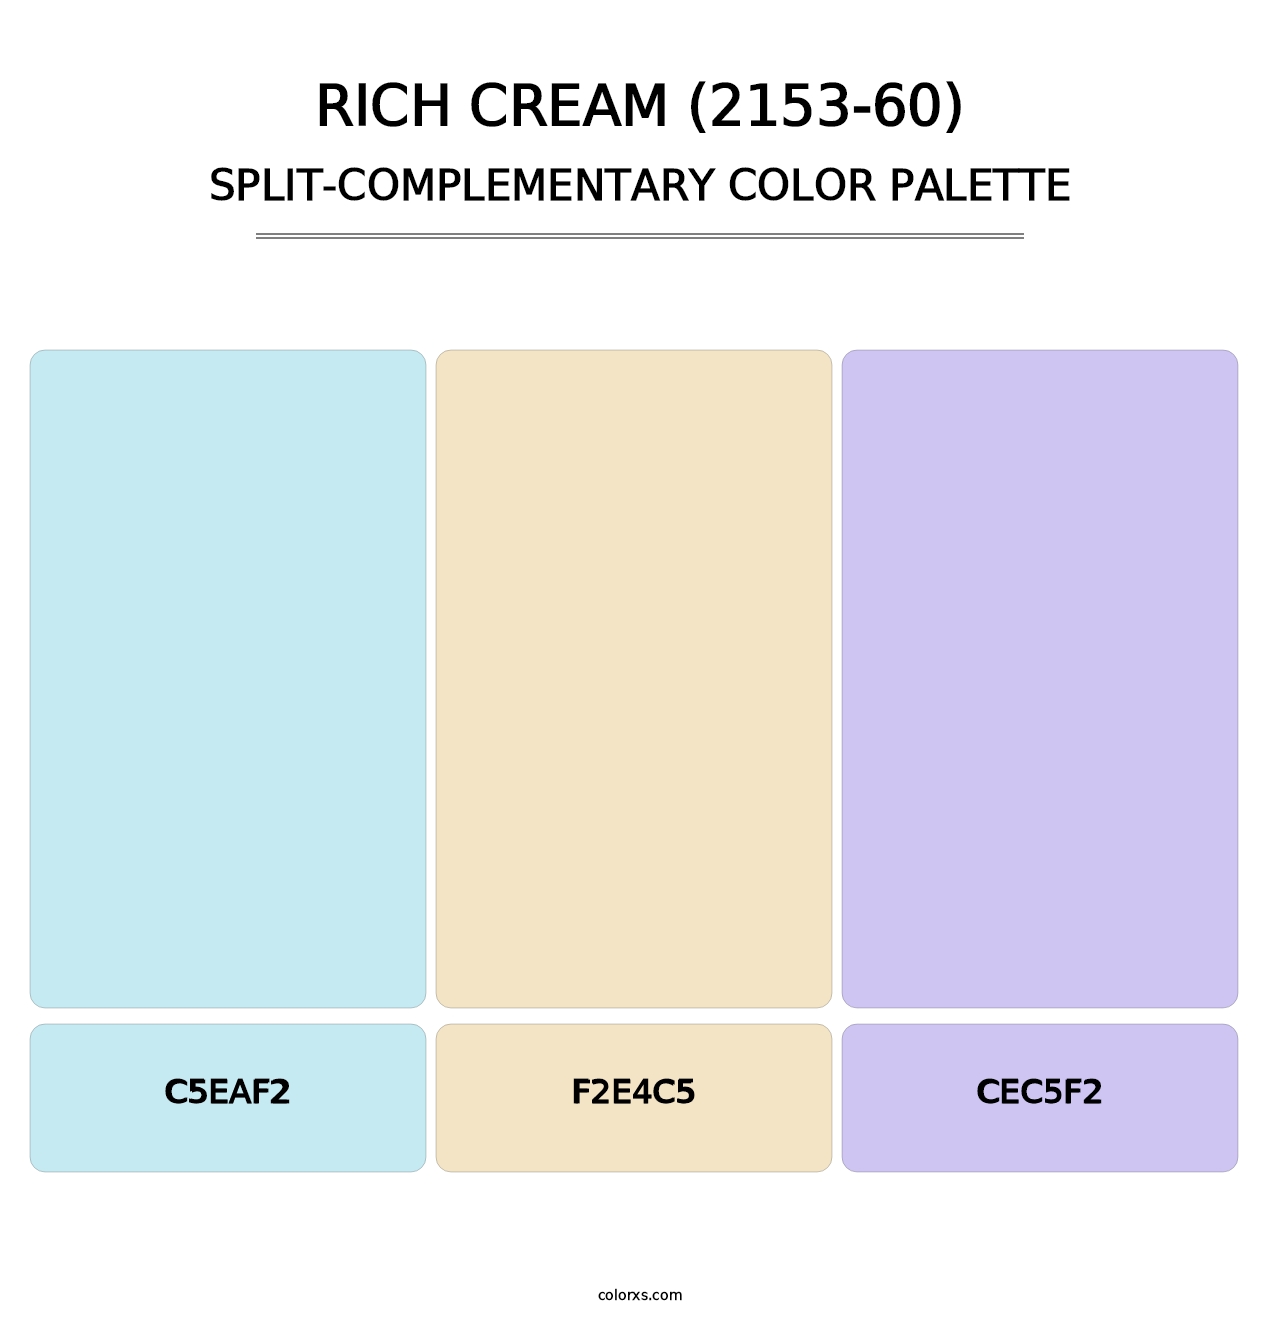 Rich Cream (2153-60) - Split-Complementary Color Palette